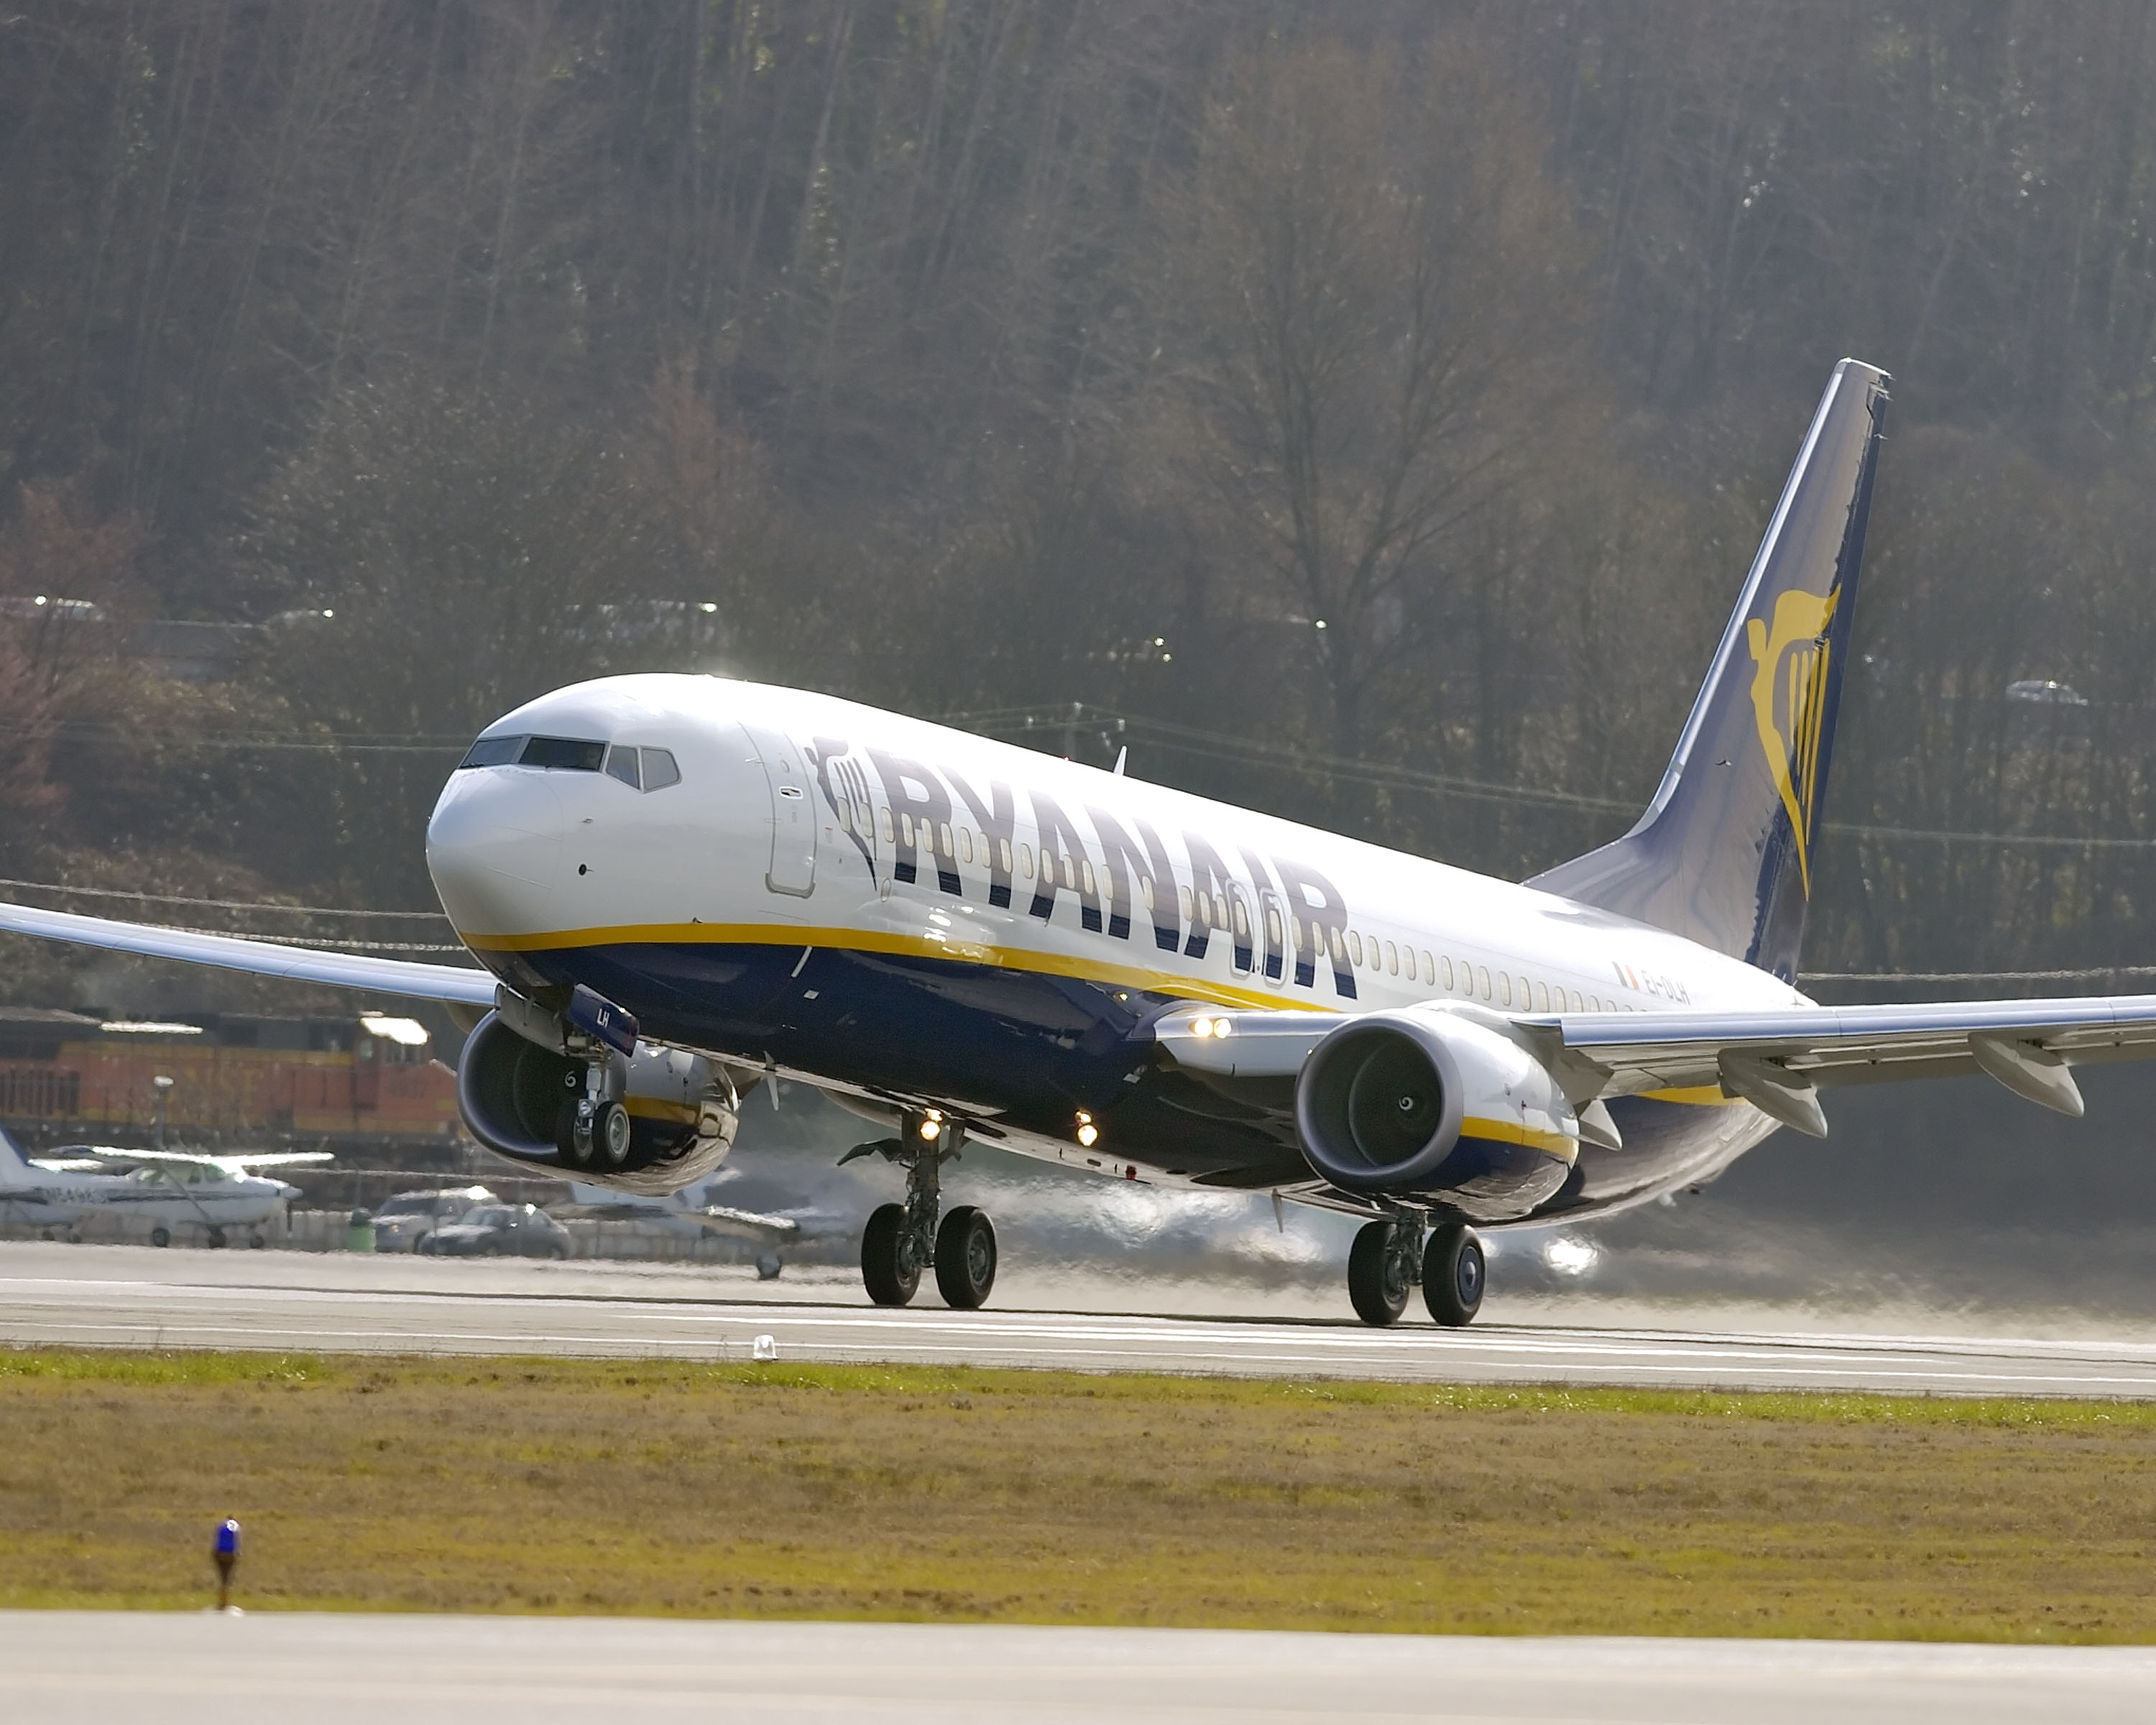 Η Επιβατικη Κινηση Της Ryanair Τον Ιανουαριο Αυξηθηκε Κατα 6% Σε 9.3 Εκατομμυρια Επιβατες